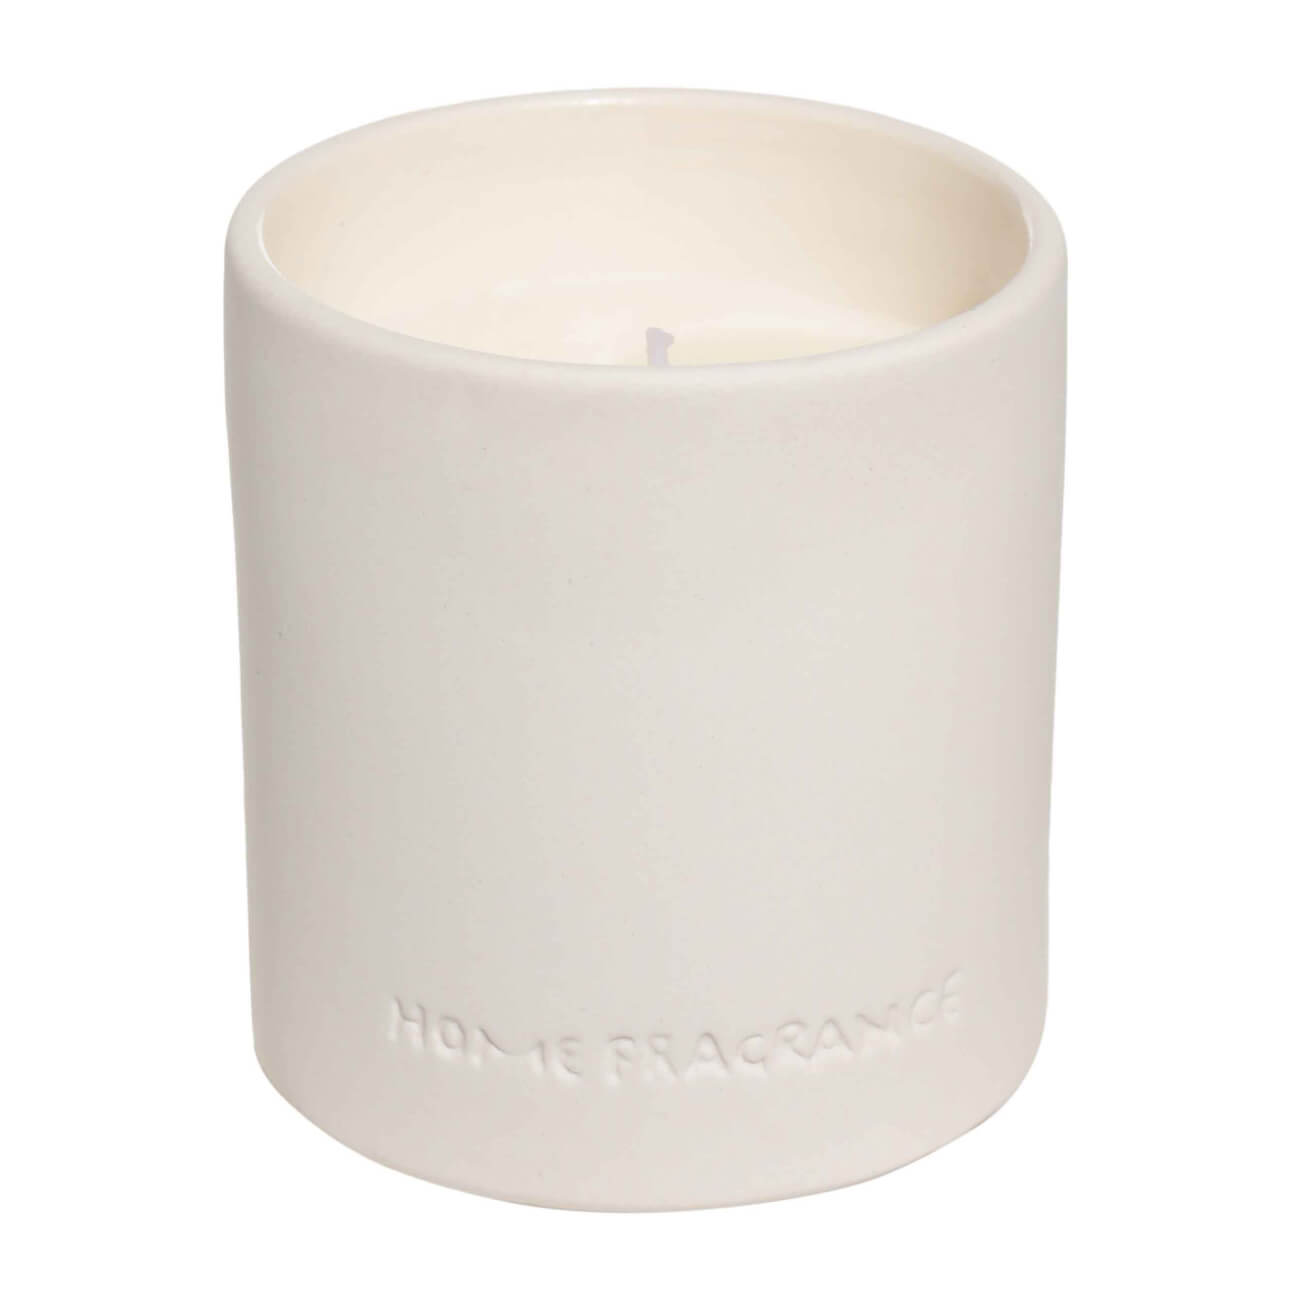 Свеча ароматическая, 9 см, в подсвечнике, керамика, белая, Neroli portofino, B&W свеча ароматизированная в подсвечнике белая мирра серая 9 см